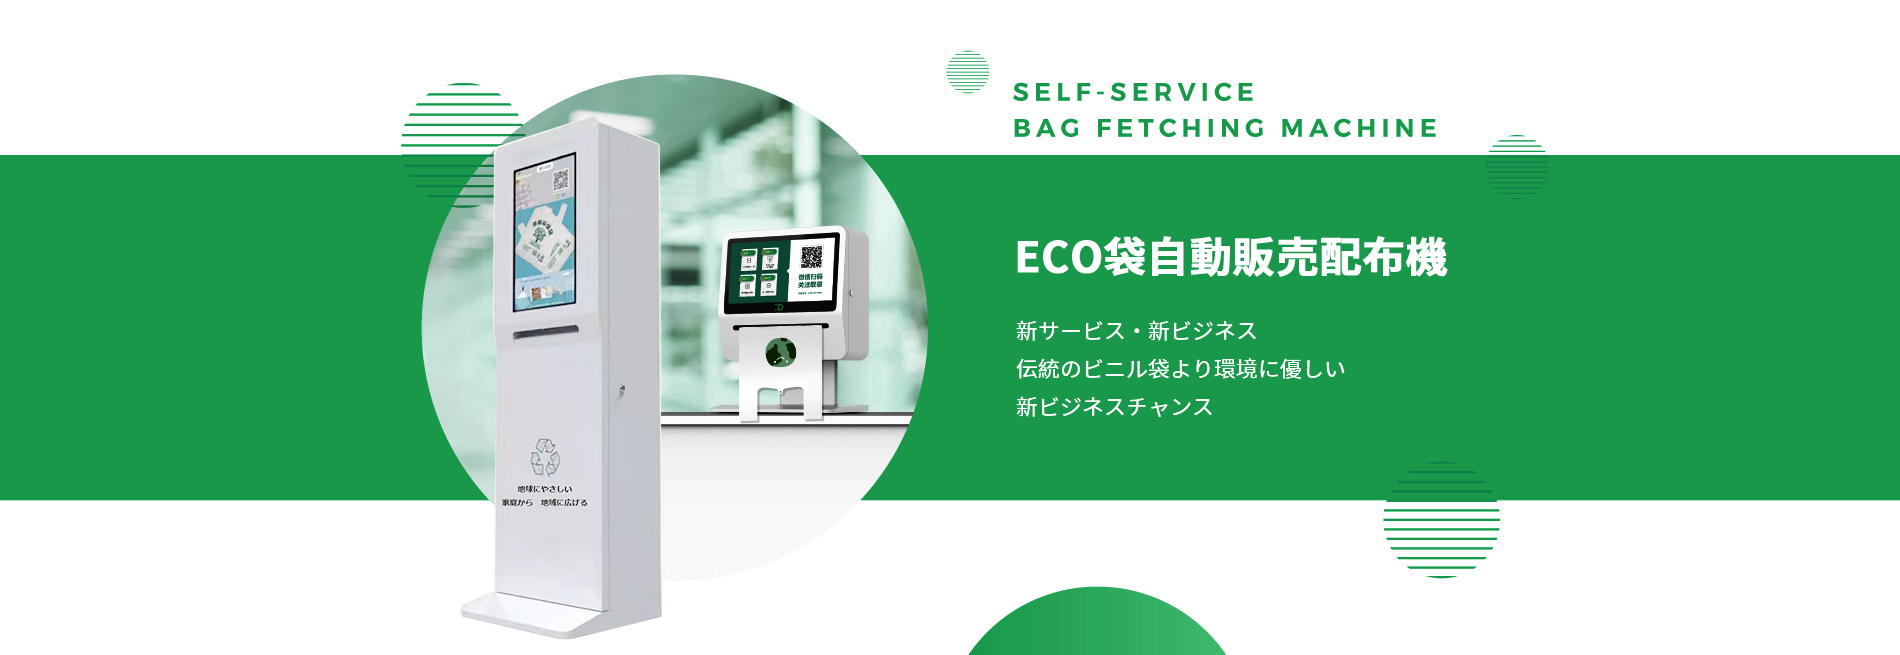 日本环保袋-自动配布机-ECO袋网站【网站欣赏】